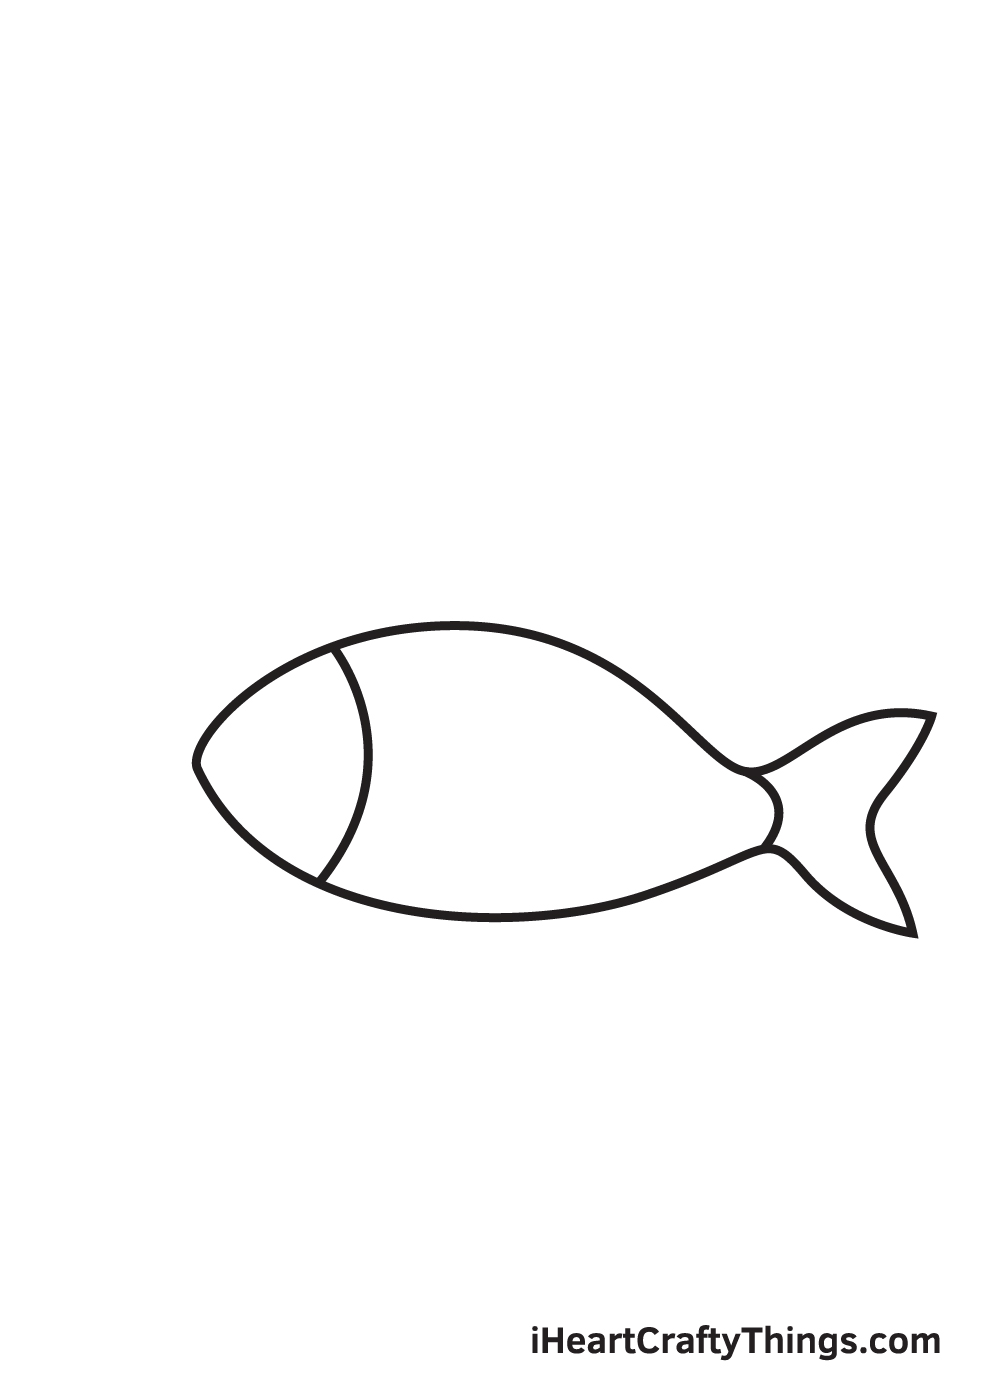 Hãy cùng tô màu cho một bức tranh vẽ đáng yêu với hình ảnh con cá đơn giản nhé! Chắc chắn bạn sẽ thích sự sinh động của tranh vẽ này.